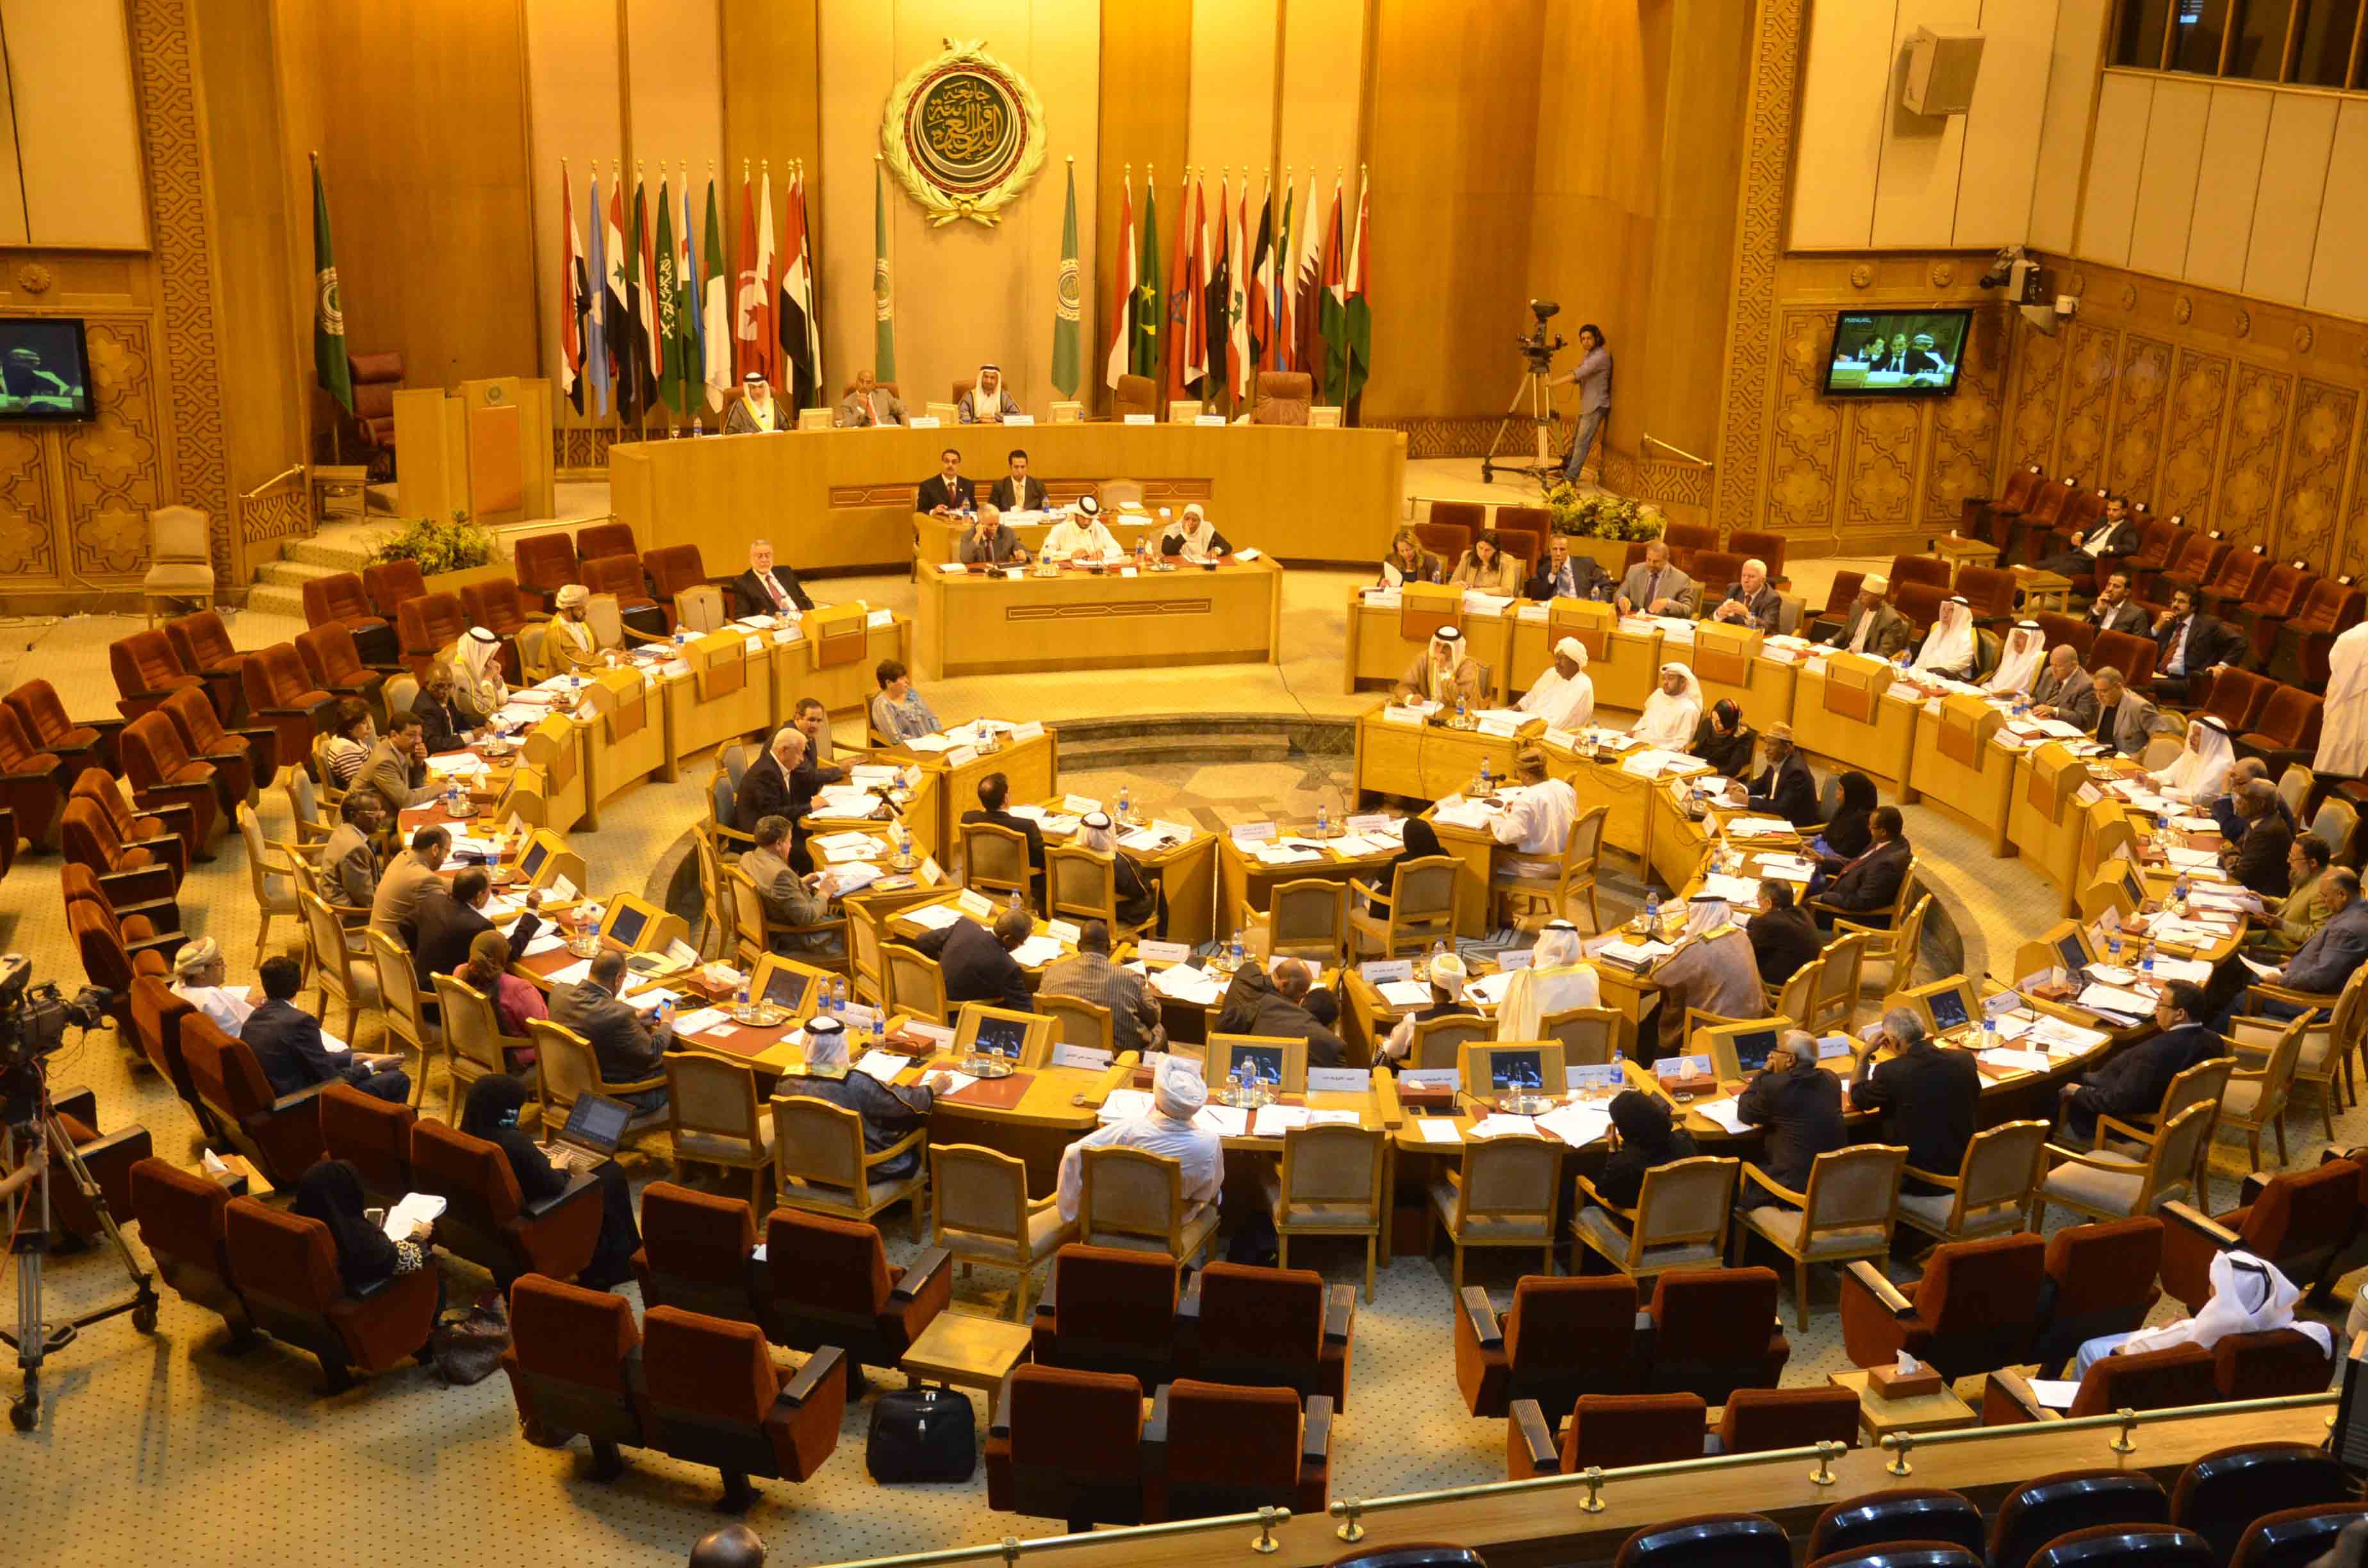   البرلمان العربي يحث على الإسراع في تشكيل الحكومة اللبنانية .. ويدعو كافة الأطراف للابتعاد عن مظاهر العنف